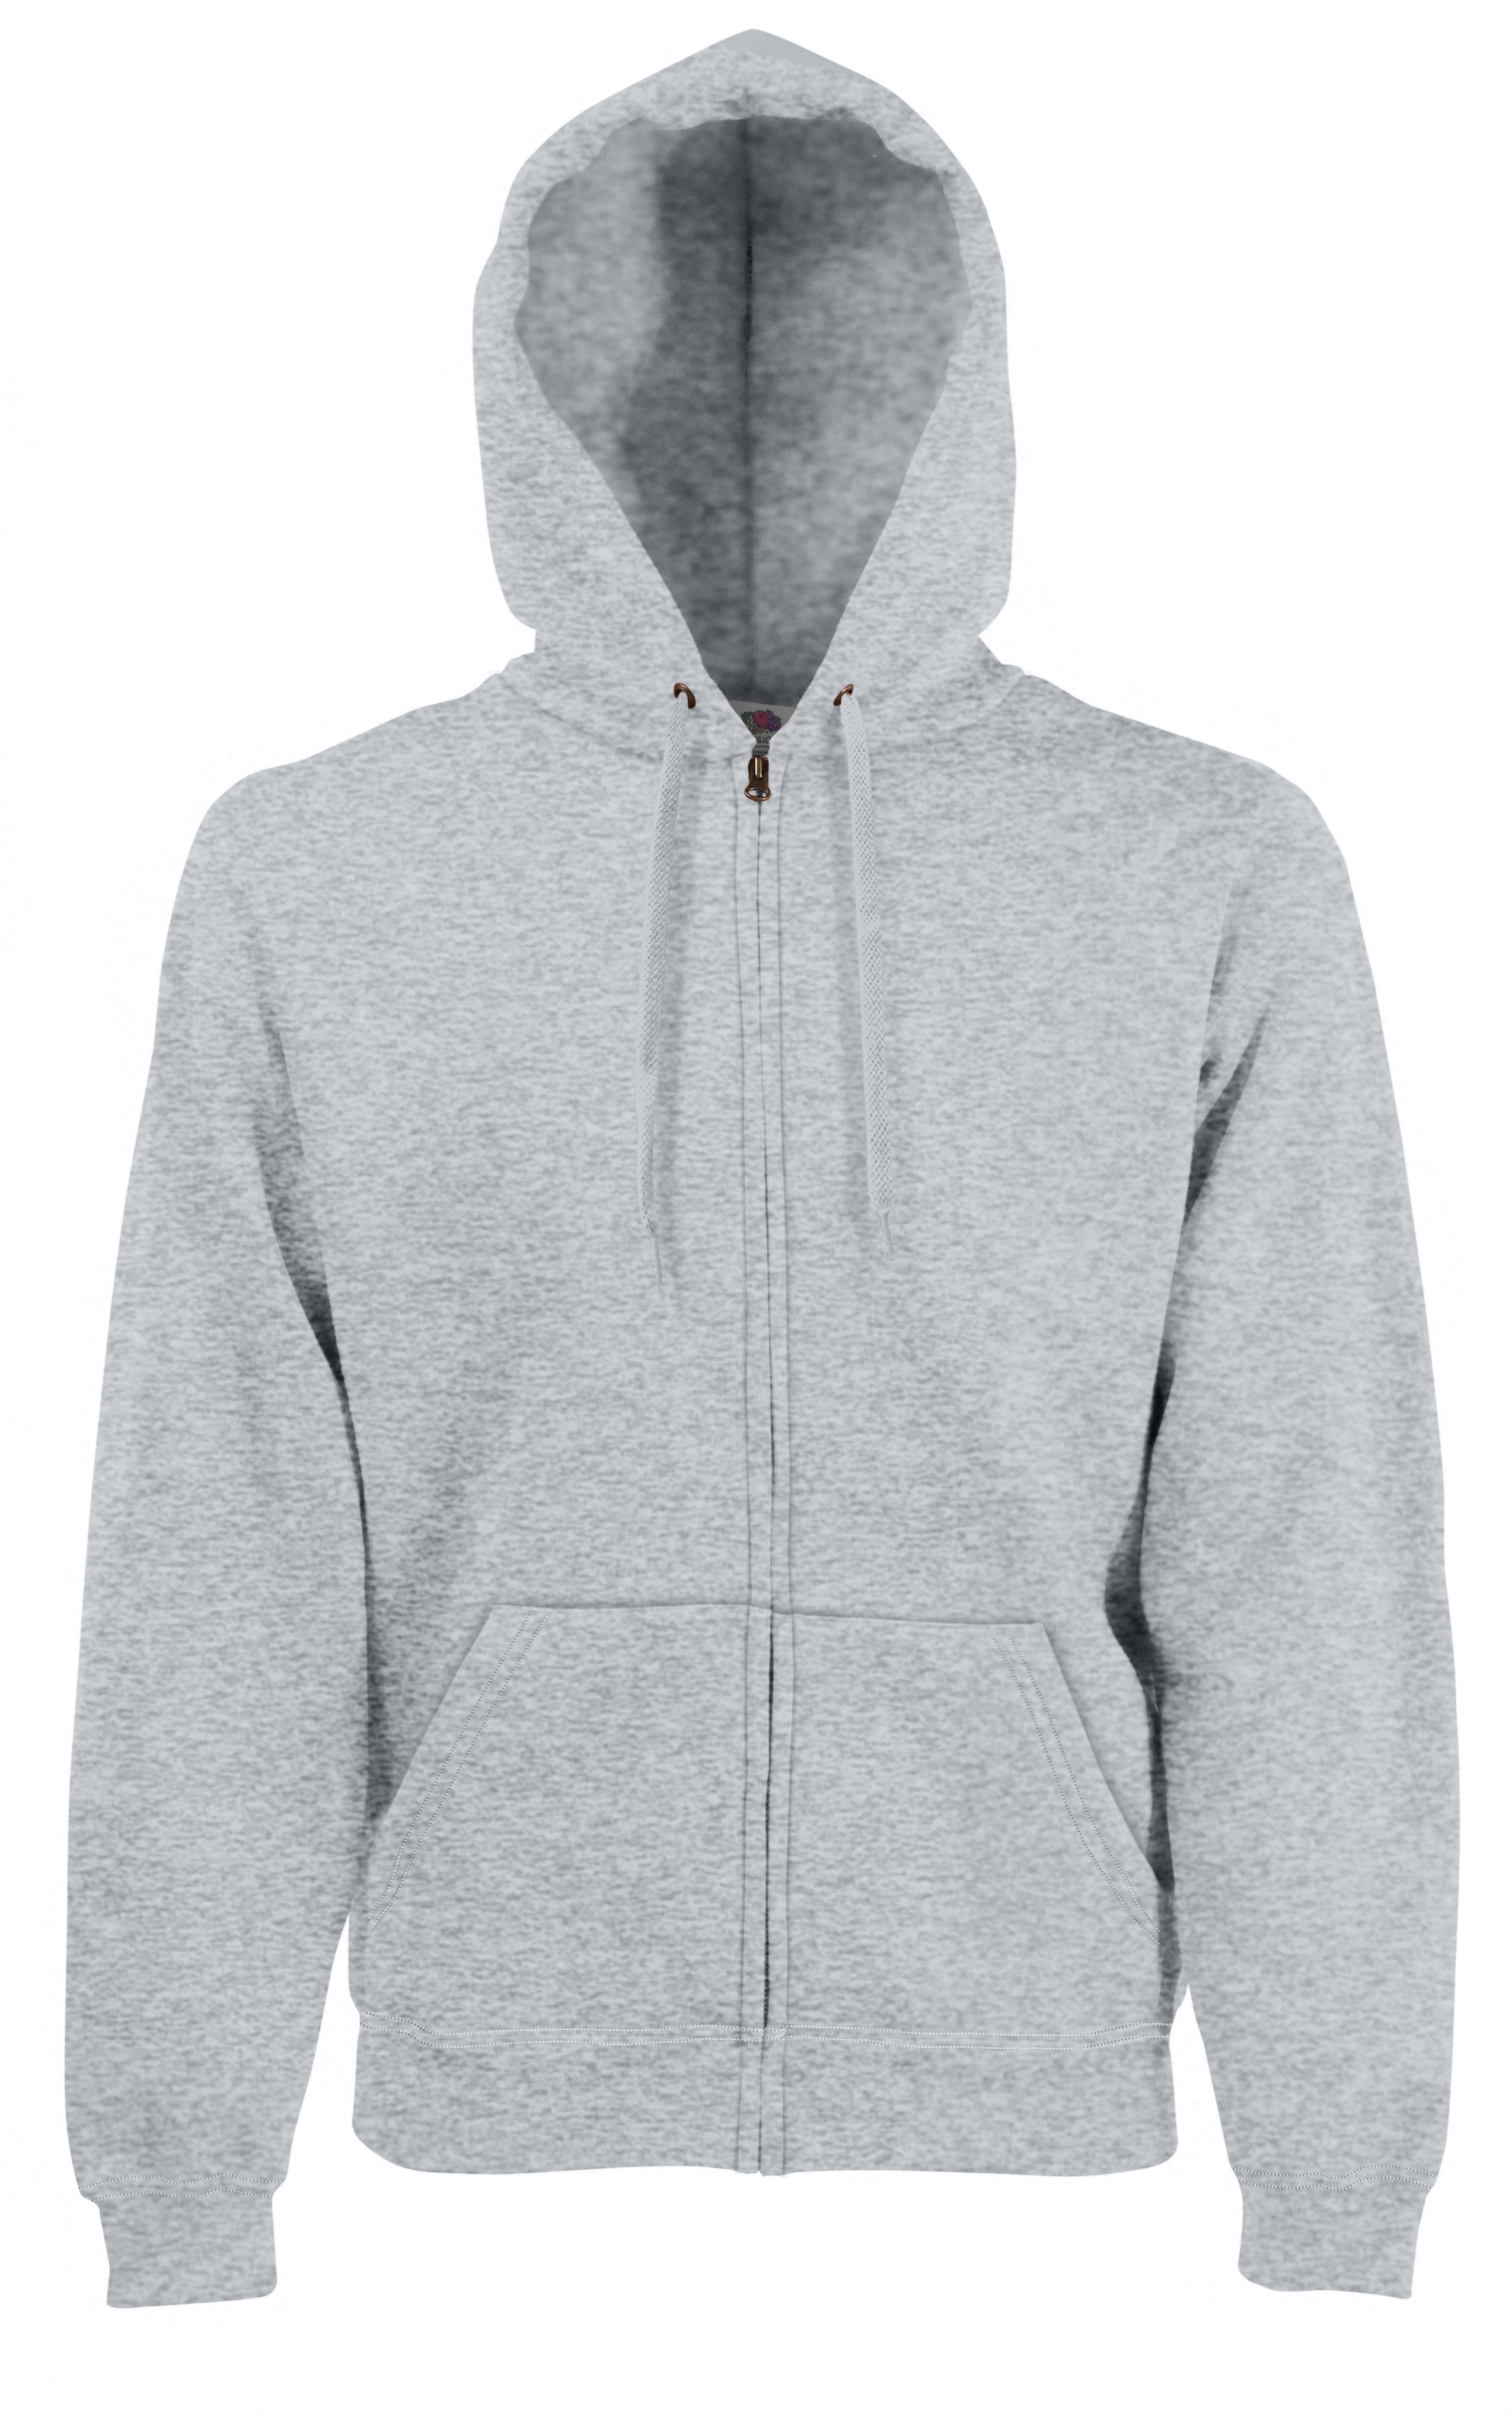 ax-httpswebsystems.s3.amazonaws.comtmp_for_downloadfruit-of-the-loom-premium-70-30-hooded-sweatshirt-jacket-heather-grey.jpeg